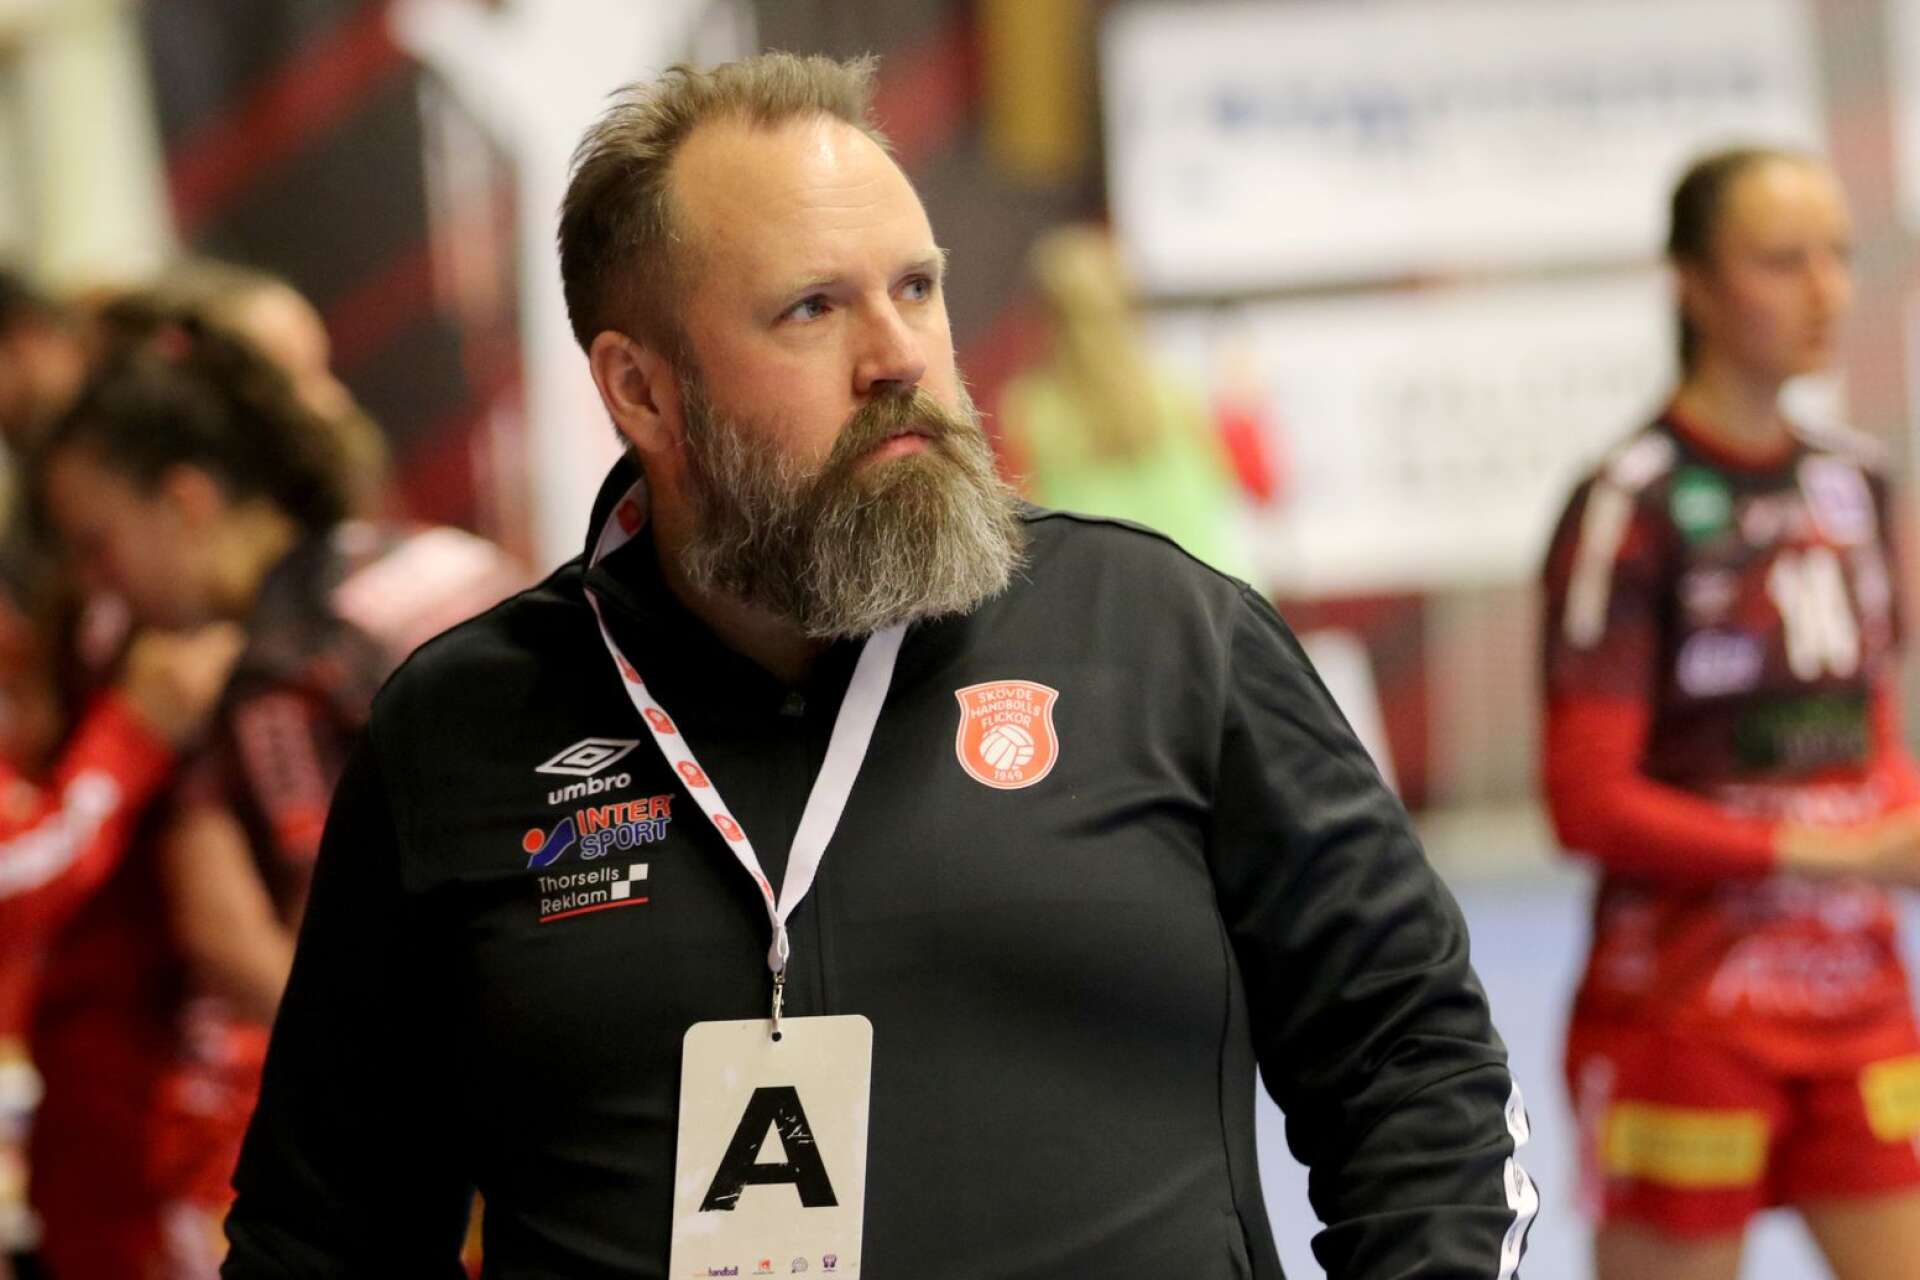 Daniel Birkelund, tränare i Skövde HF, var kritisk till en situation i matchen där gästerna gjorde ett regelfel utan åtgärd ifrån domare eller sekretariat.